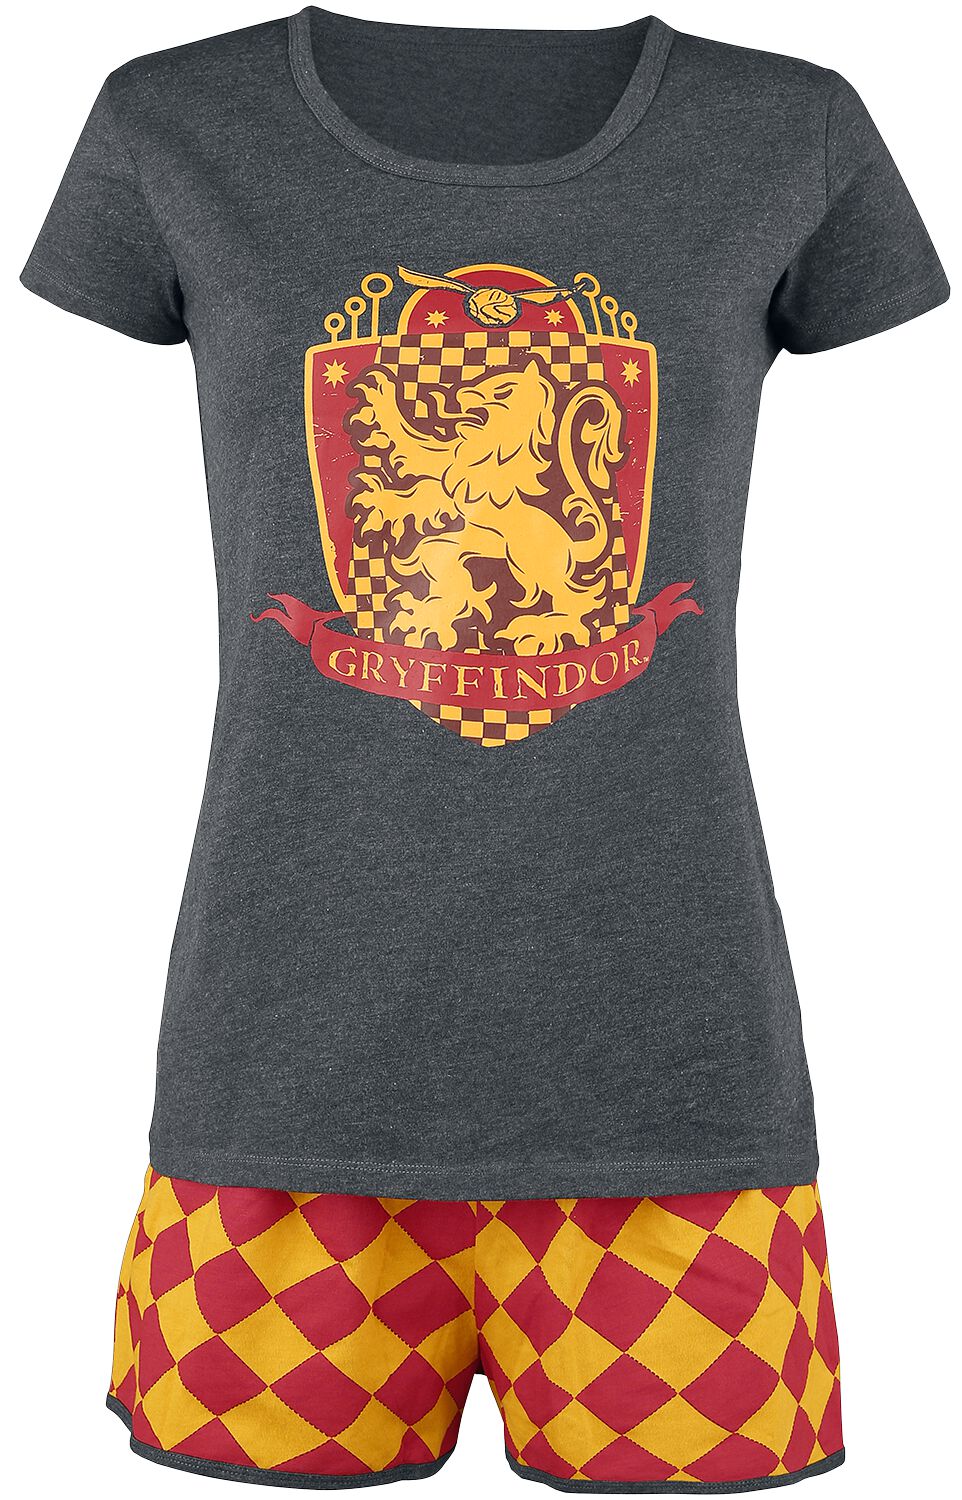 Harry Potter Schlafanzug - Gryffindor Quidditch - XS bis 5XL - für Damen - Größe M - grau/rot/gelb  - EMP exklusives Merchandise! von Harry Potter